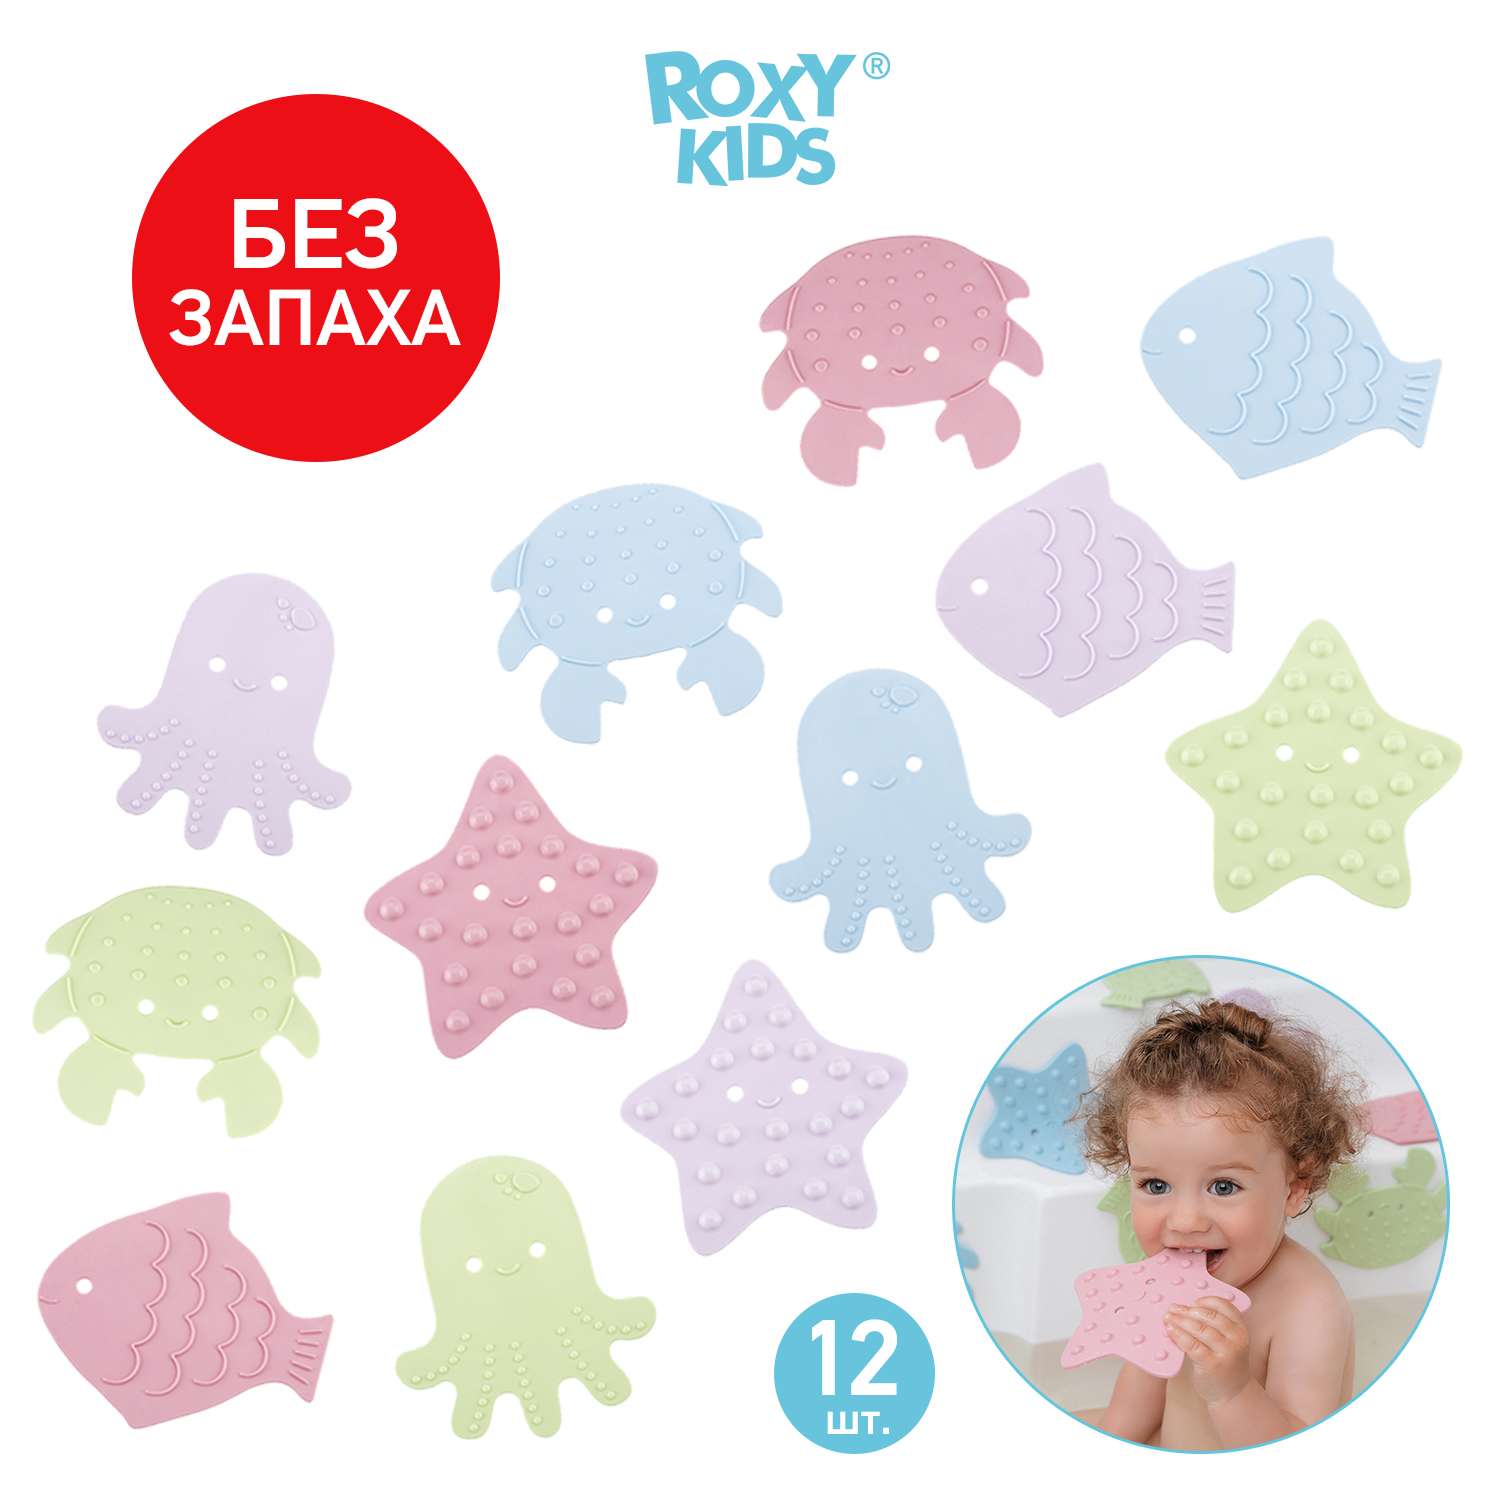 Мини-коврики детские ROXY-KIDS для ванной противоскользящие Sea animals 12 шт цвета в ассортименте - фото 2